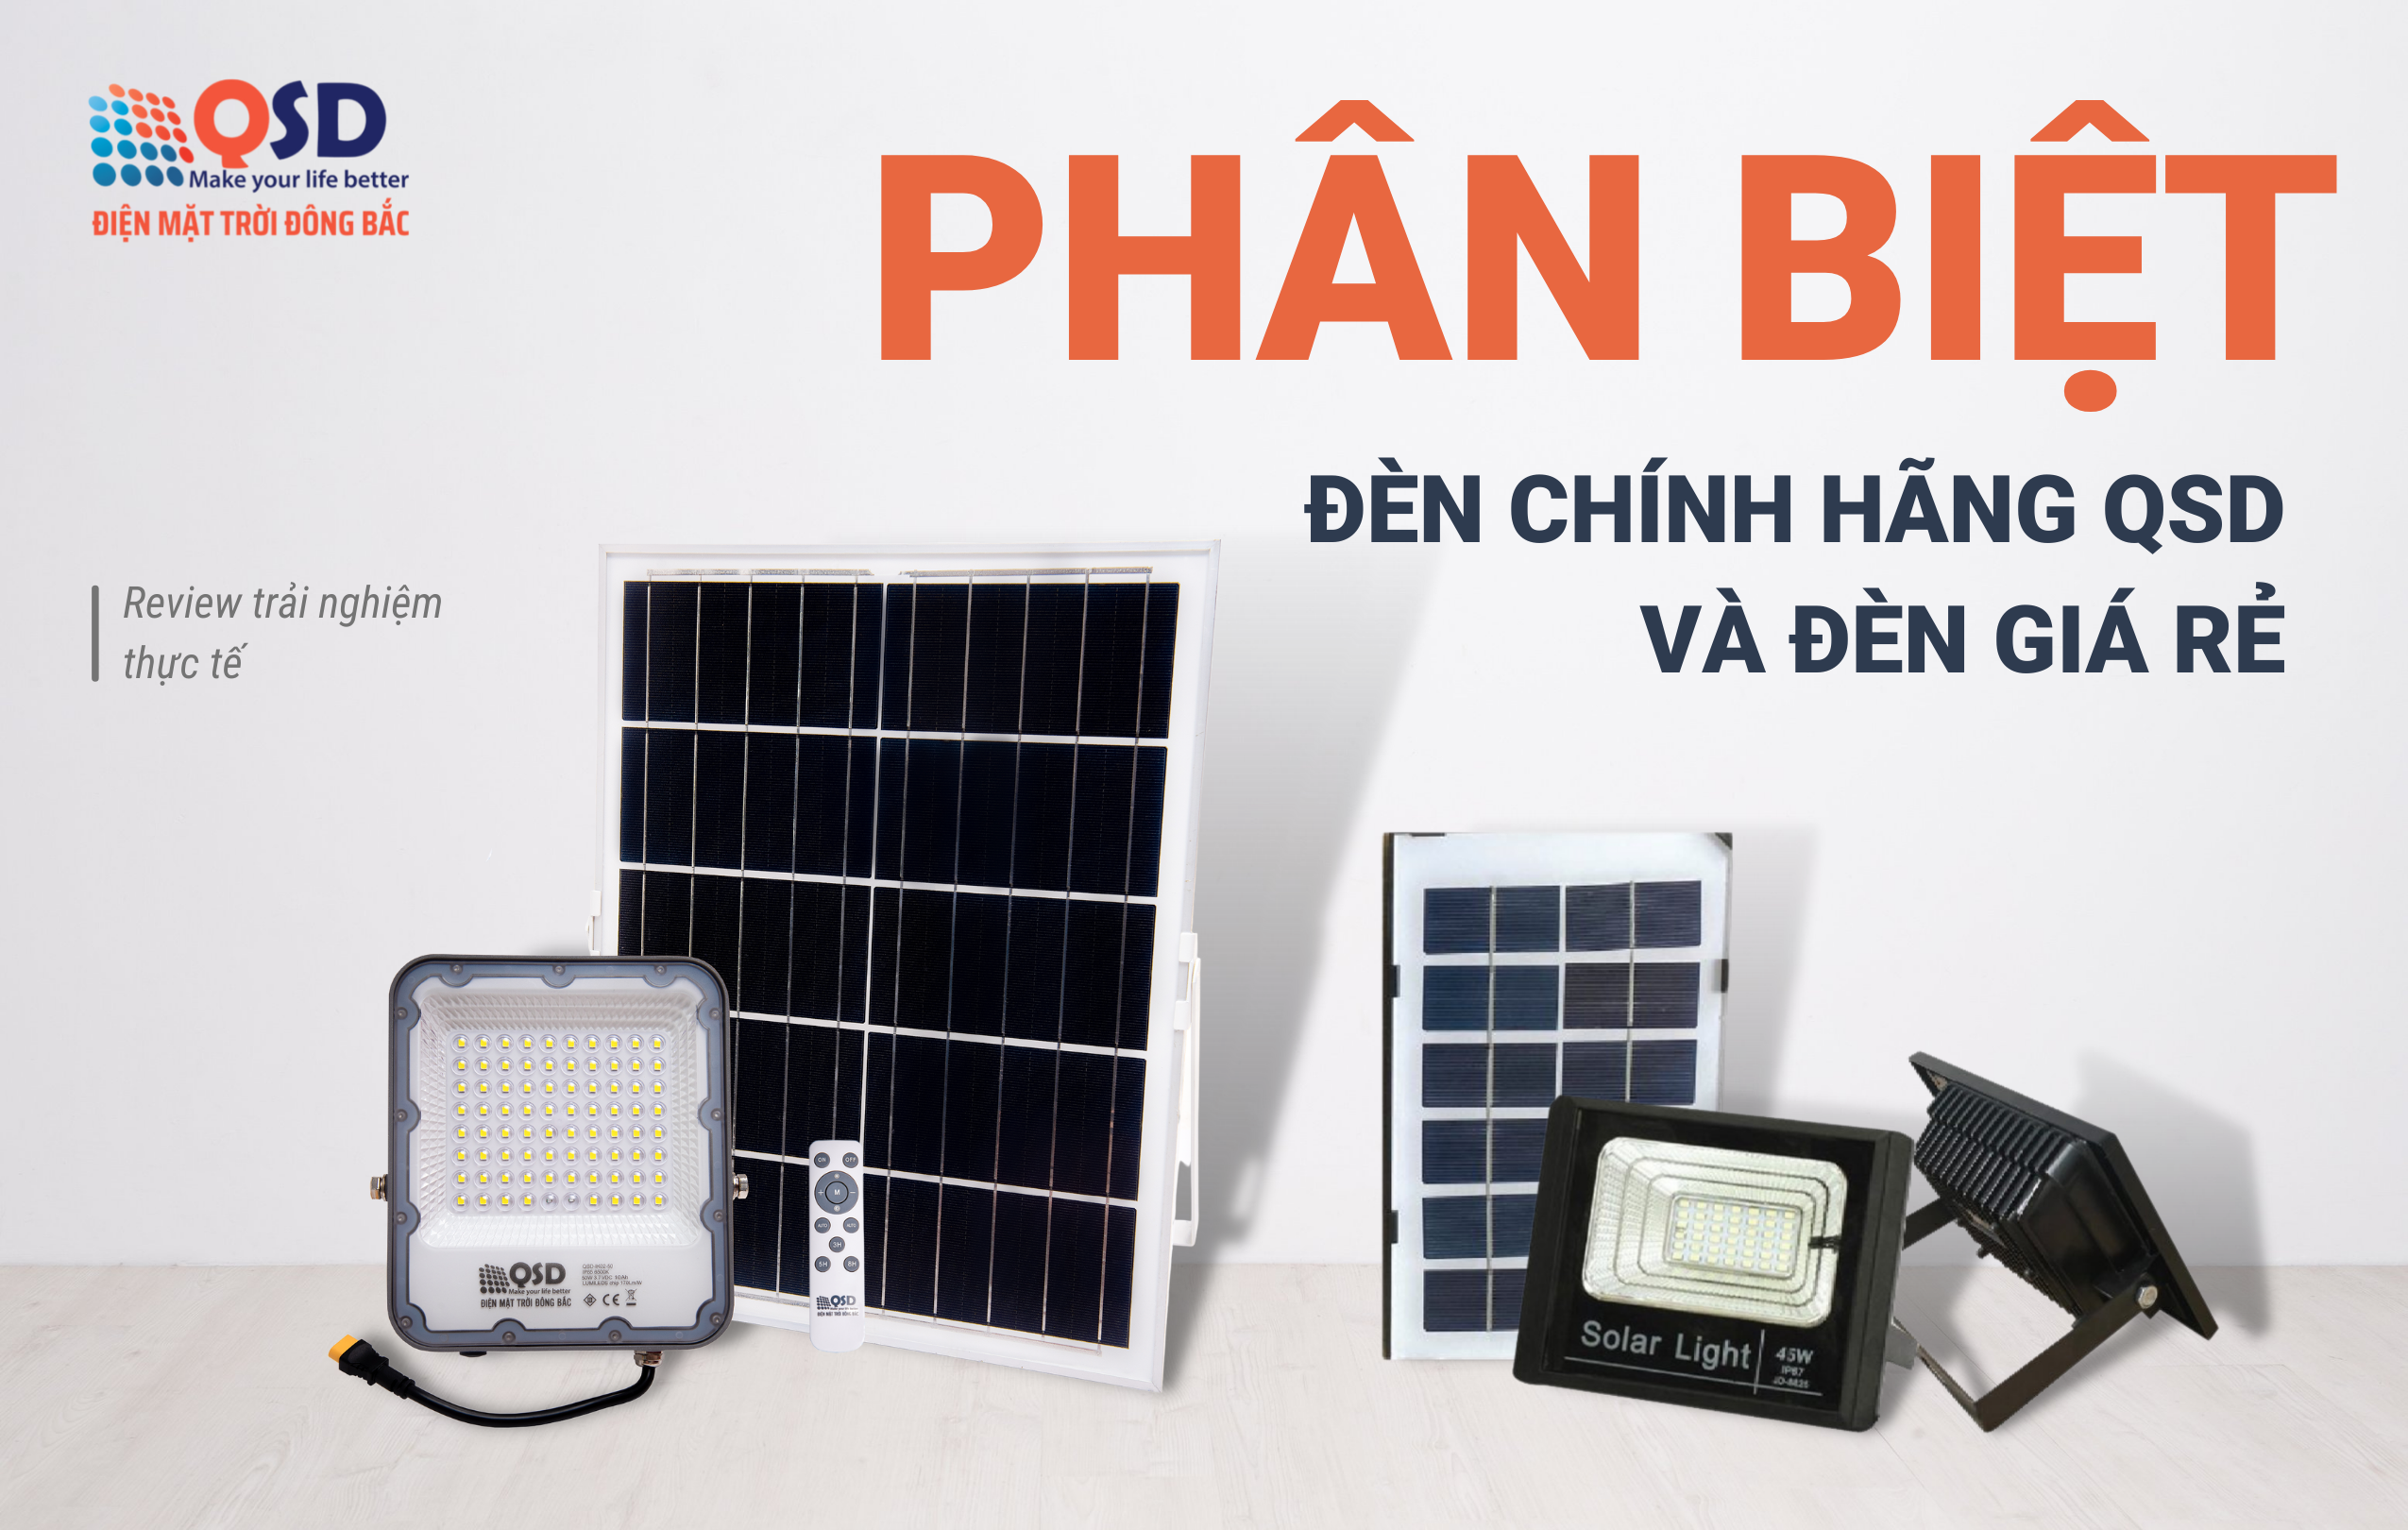 Phân biệt đèn năng lượng mặt trời chính hãng QSD với các sản phẩm đèn năng lượng giá rẻ trên thị trường